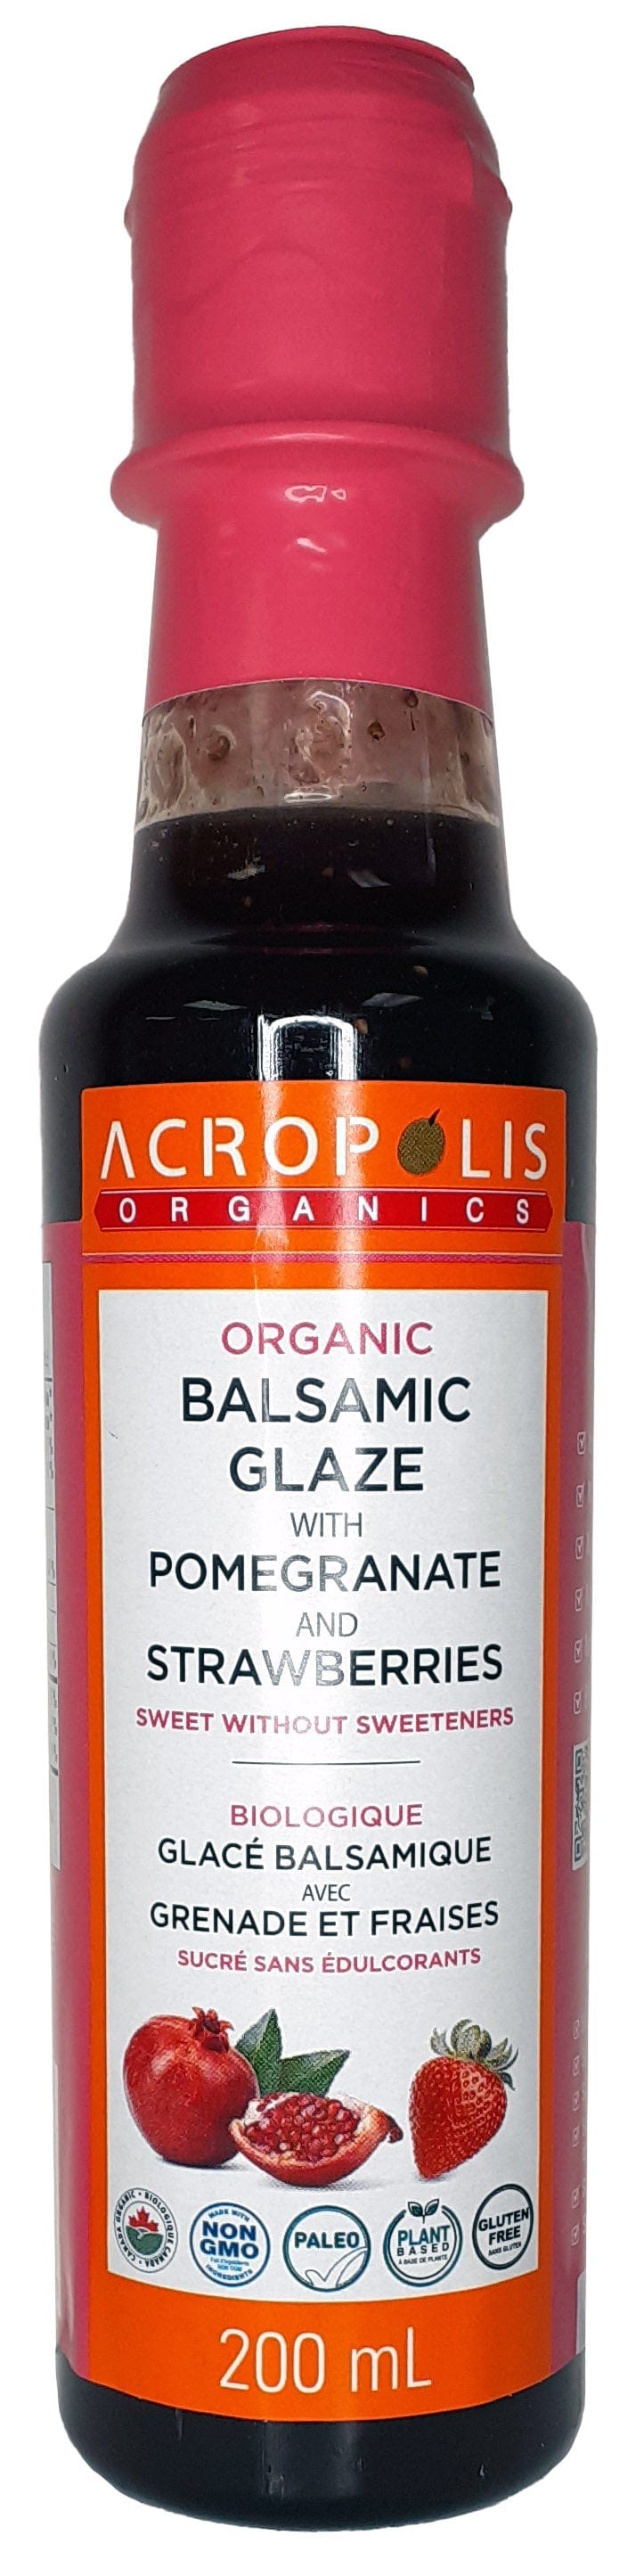 ACROPOLIS Épicerie Glacé balsamique avec grenade et fraises bio 200ml